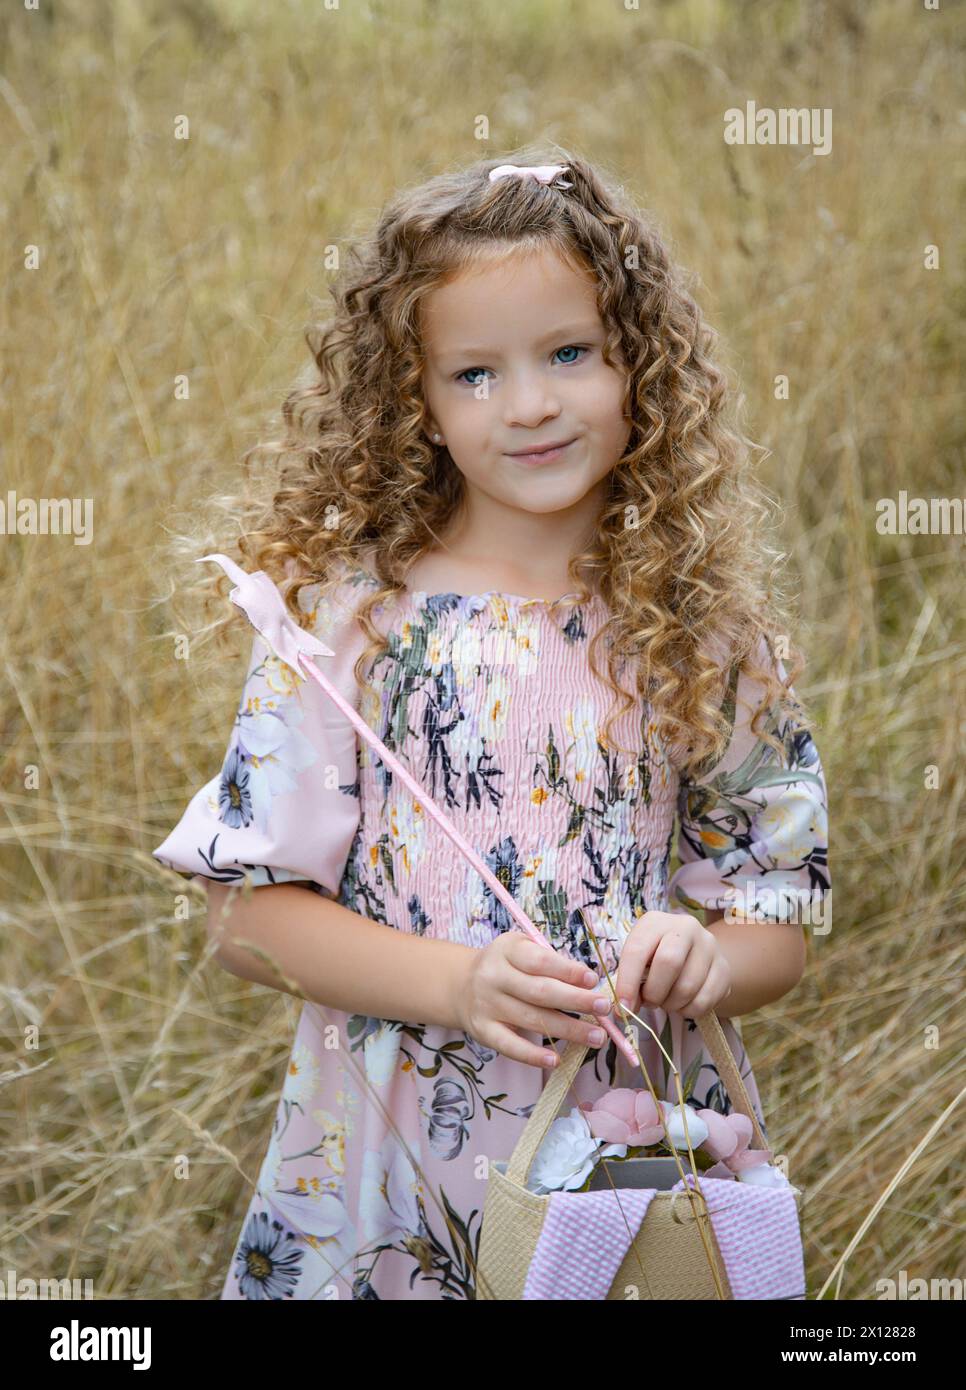 Bella ragazza dai capelli ricci vestita con un abito rosa che regge l'estate a forma di stella e una borsa in un campo coltivato con erba marrone pastello Foto Stock